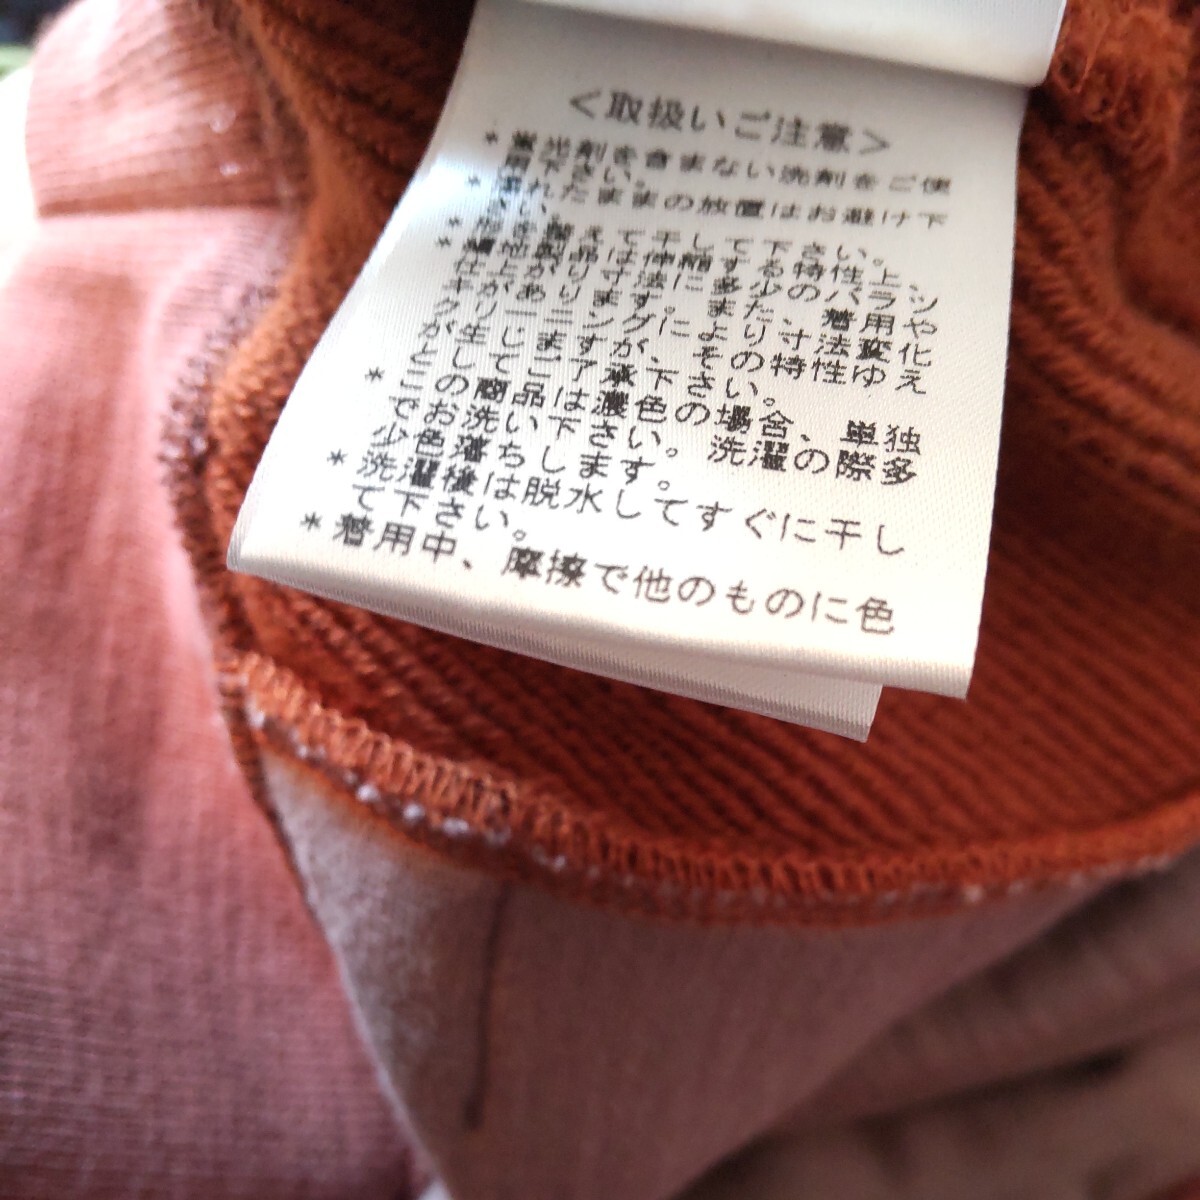 # не использовался #PS Paul Smith # футболка # Zebra вышивка # Parker карман есть # обычная цена 24,200 иен #Z